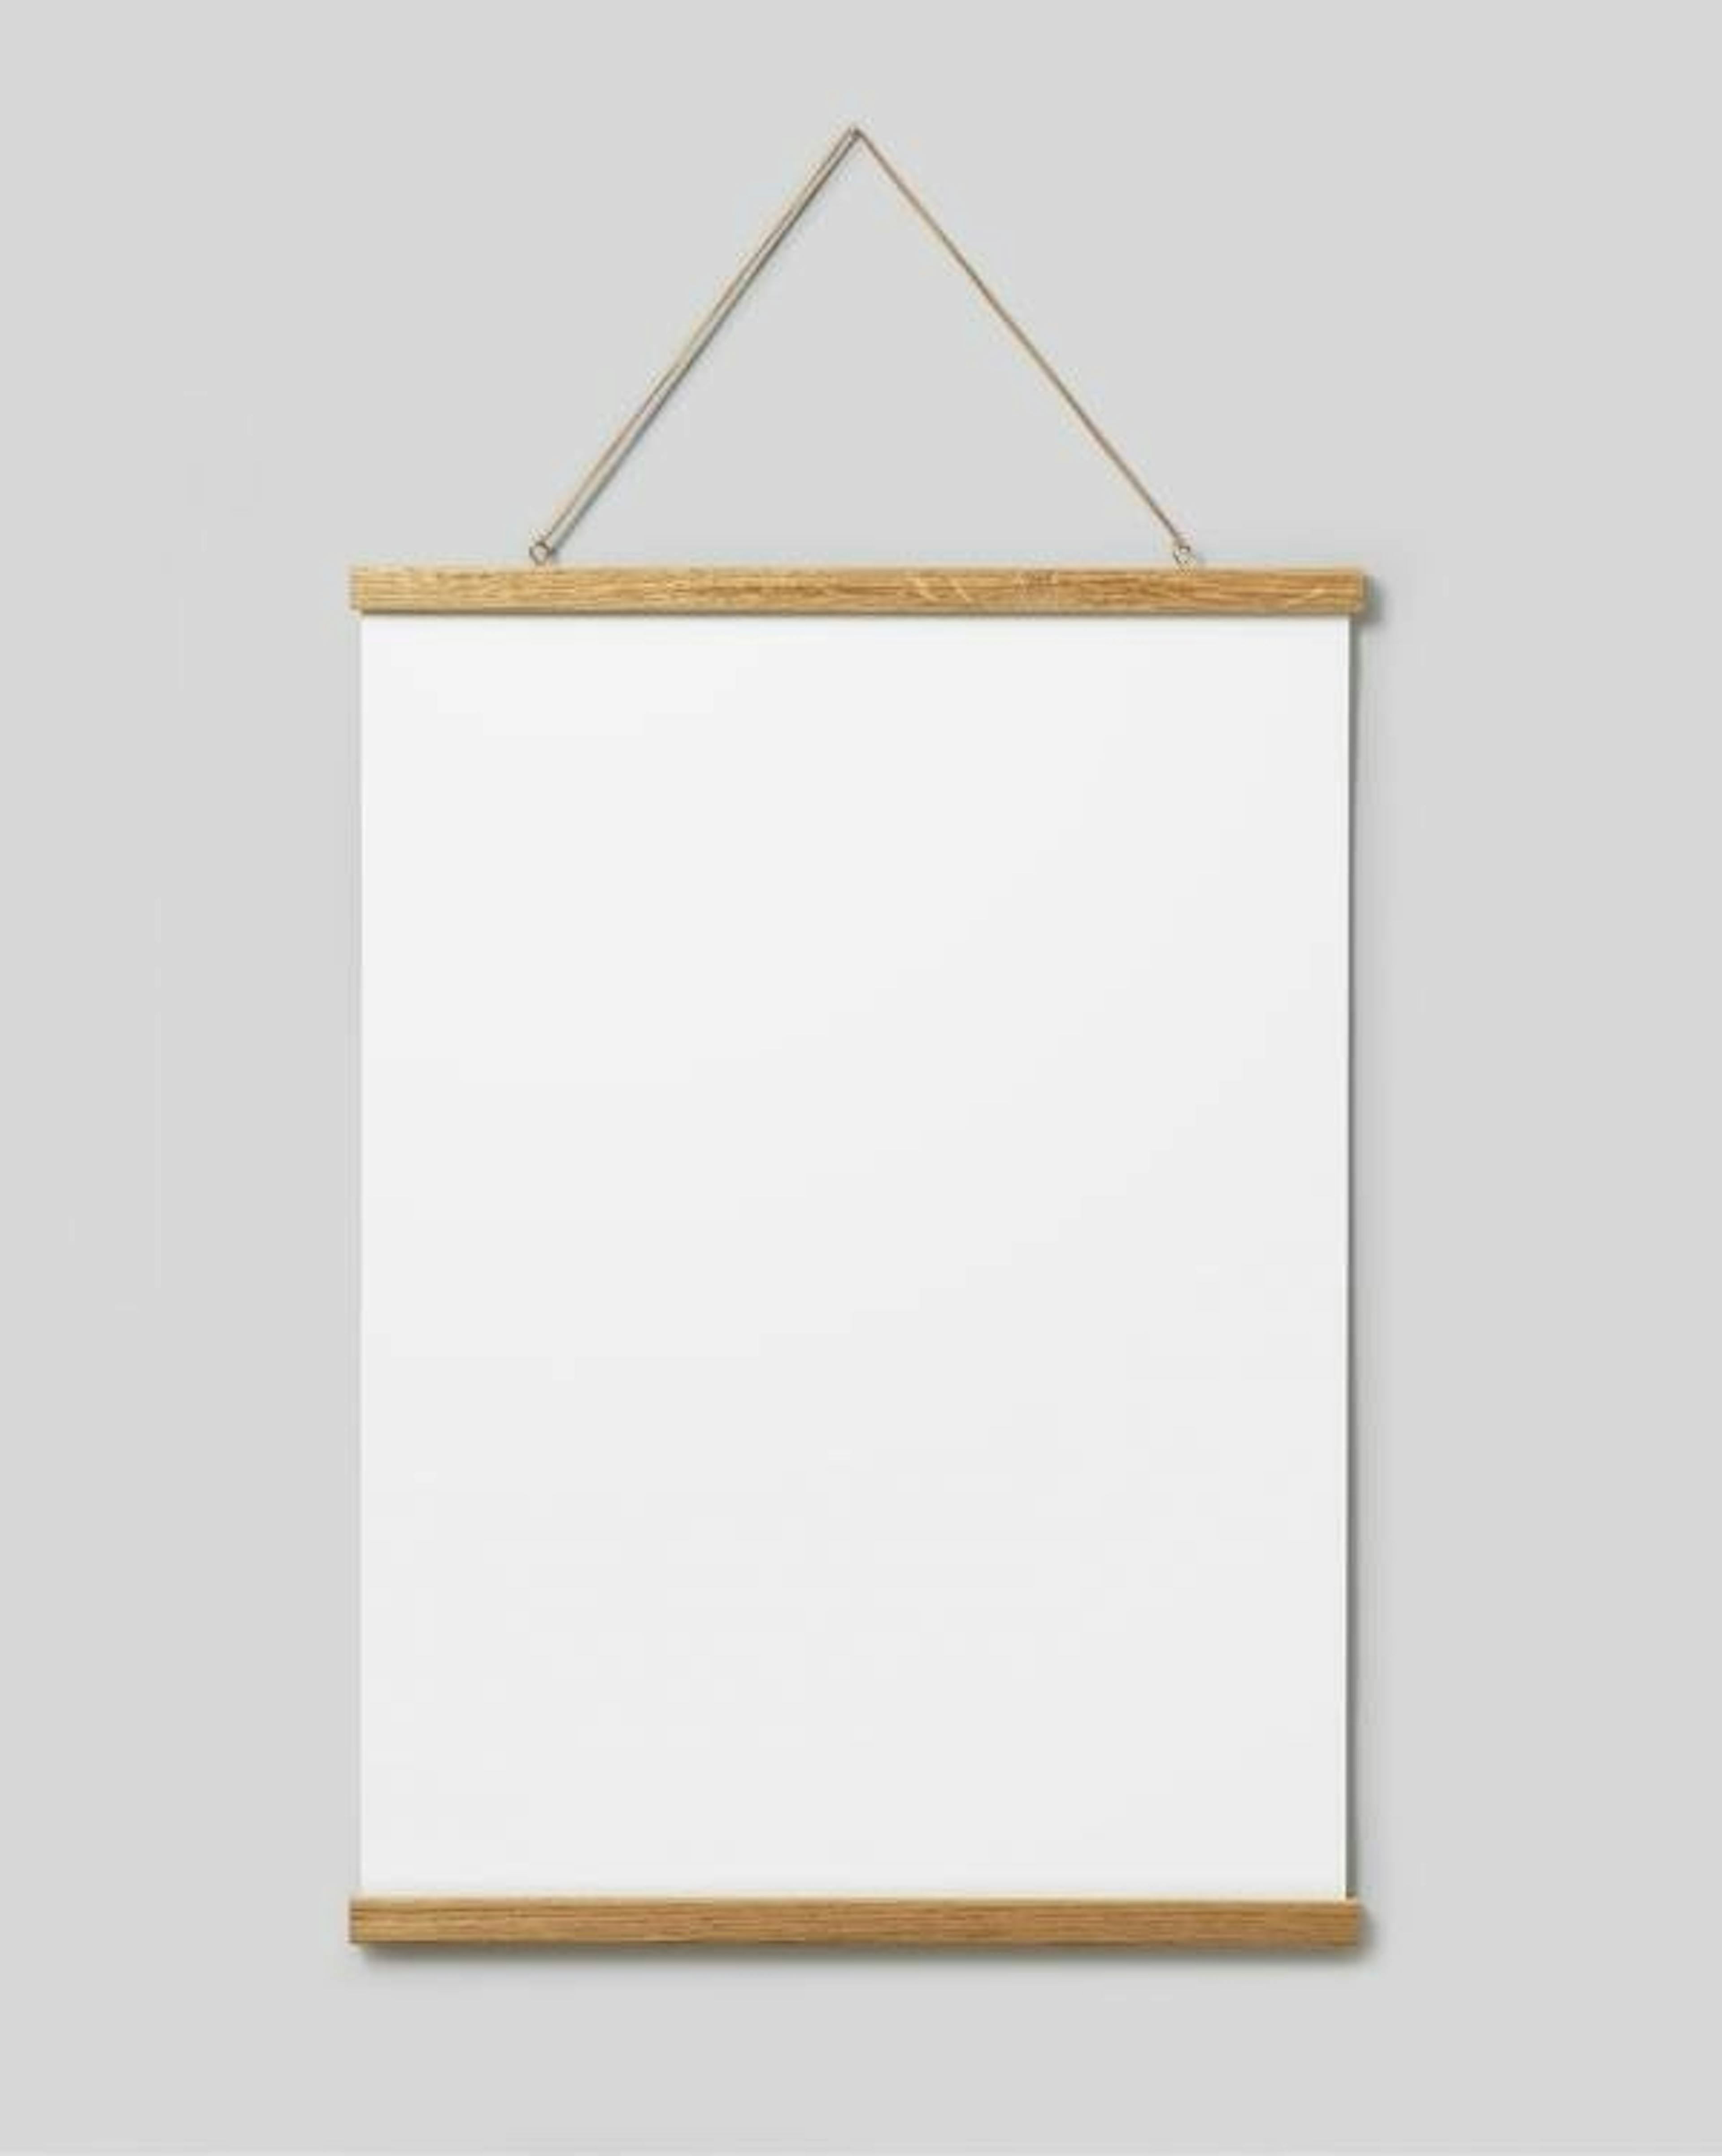 Poster hanger roble 51 cm, montaje con imán 0